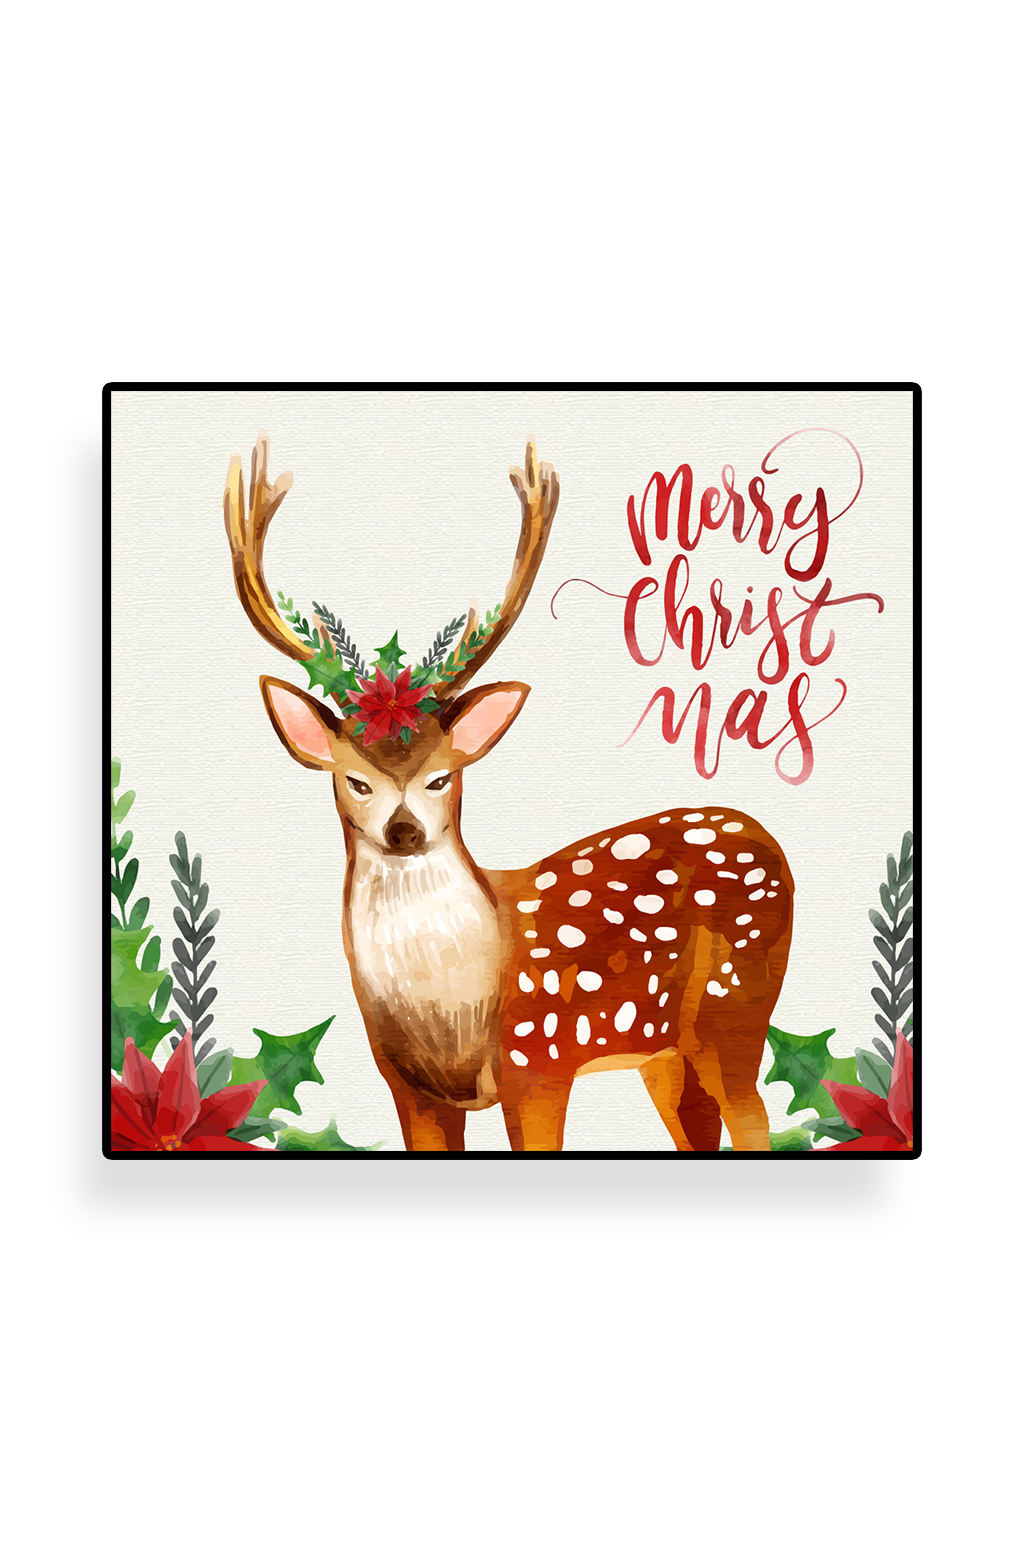 圣诞节插画圣诞老人和驯鹿圣诞快乐创意2只装饰圣诞树的驯鹿矢量素材